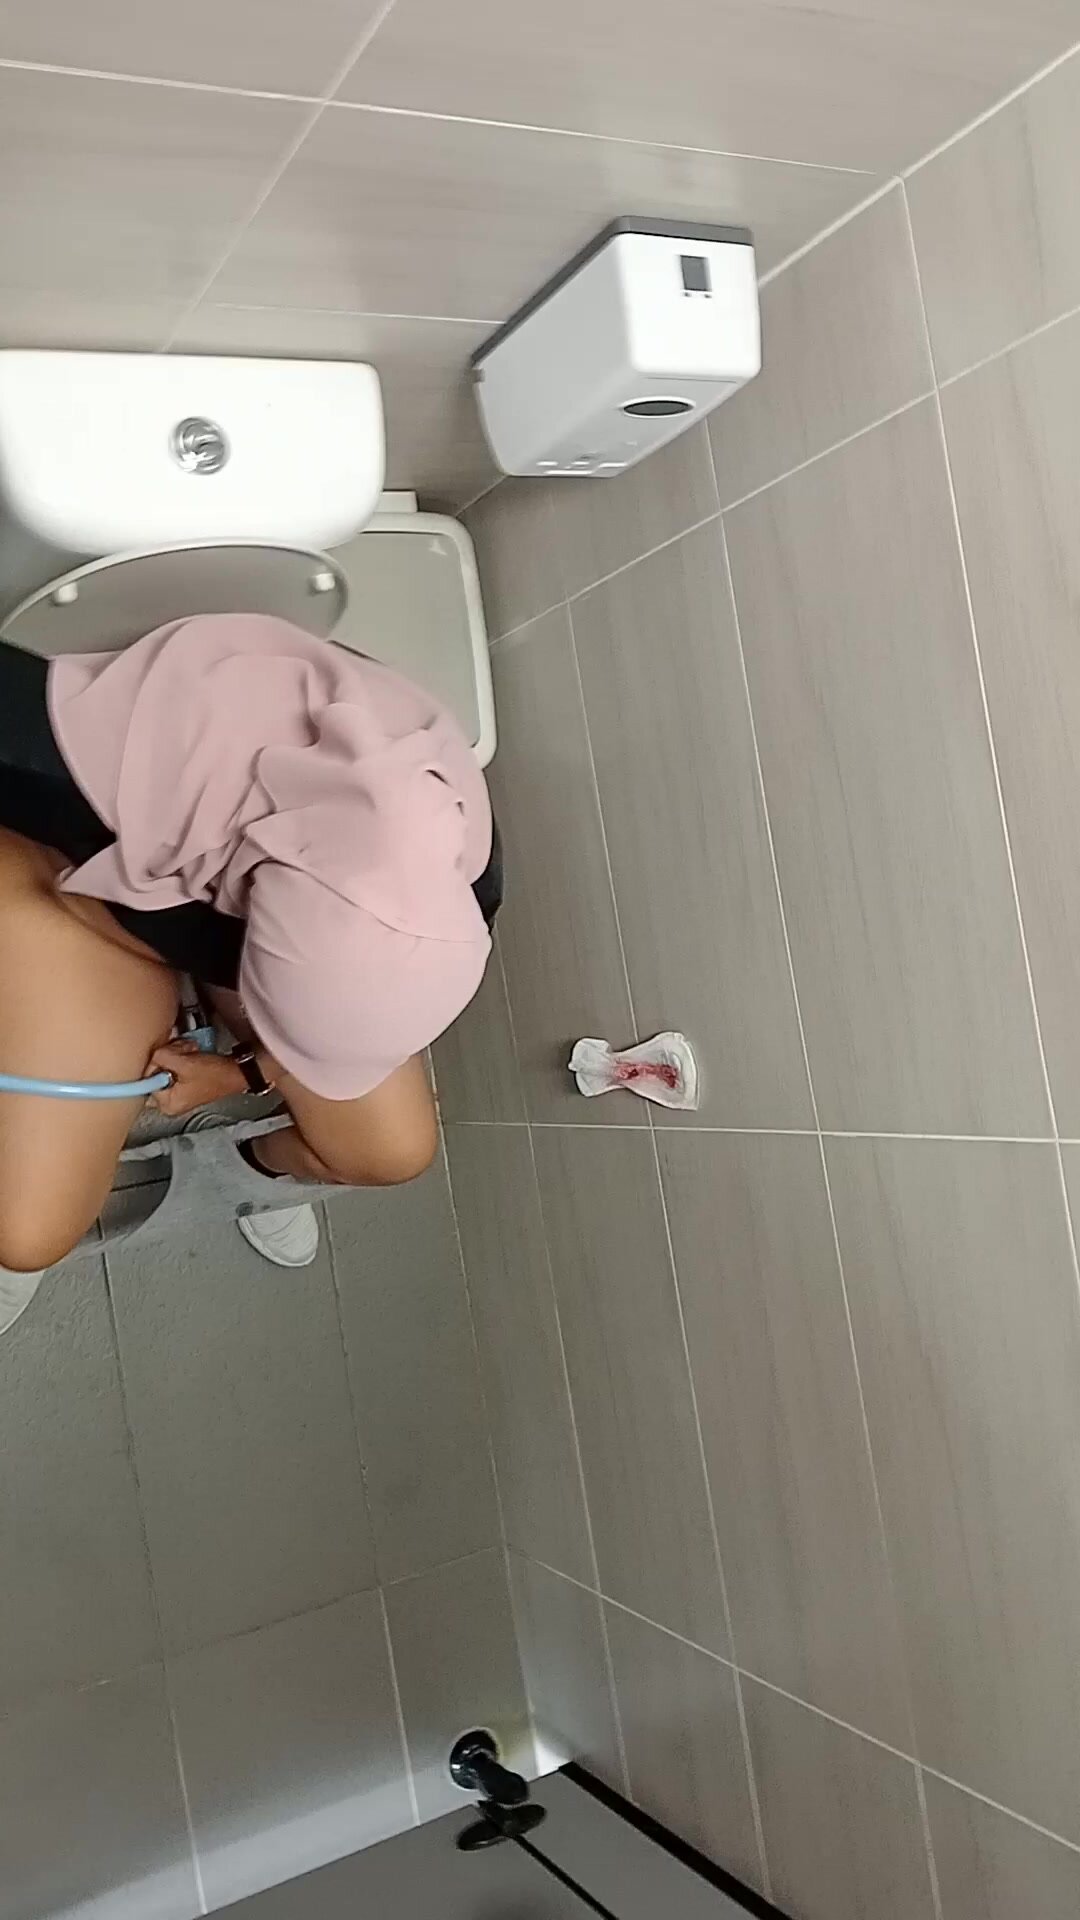 Malay toilet porn